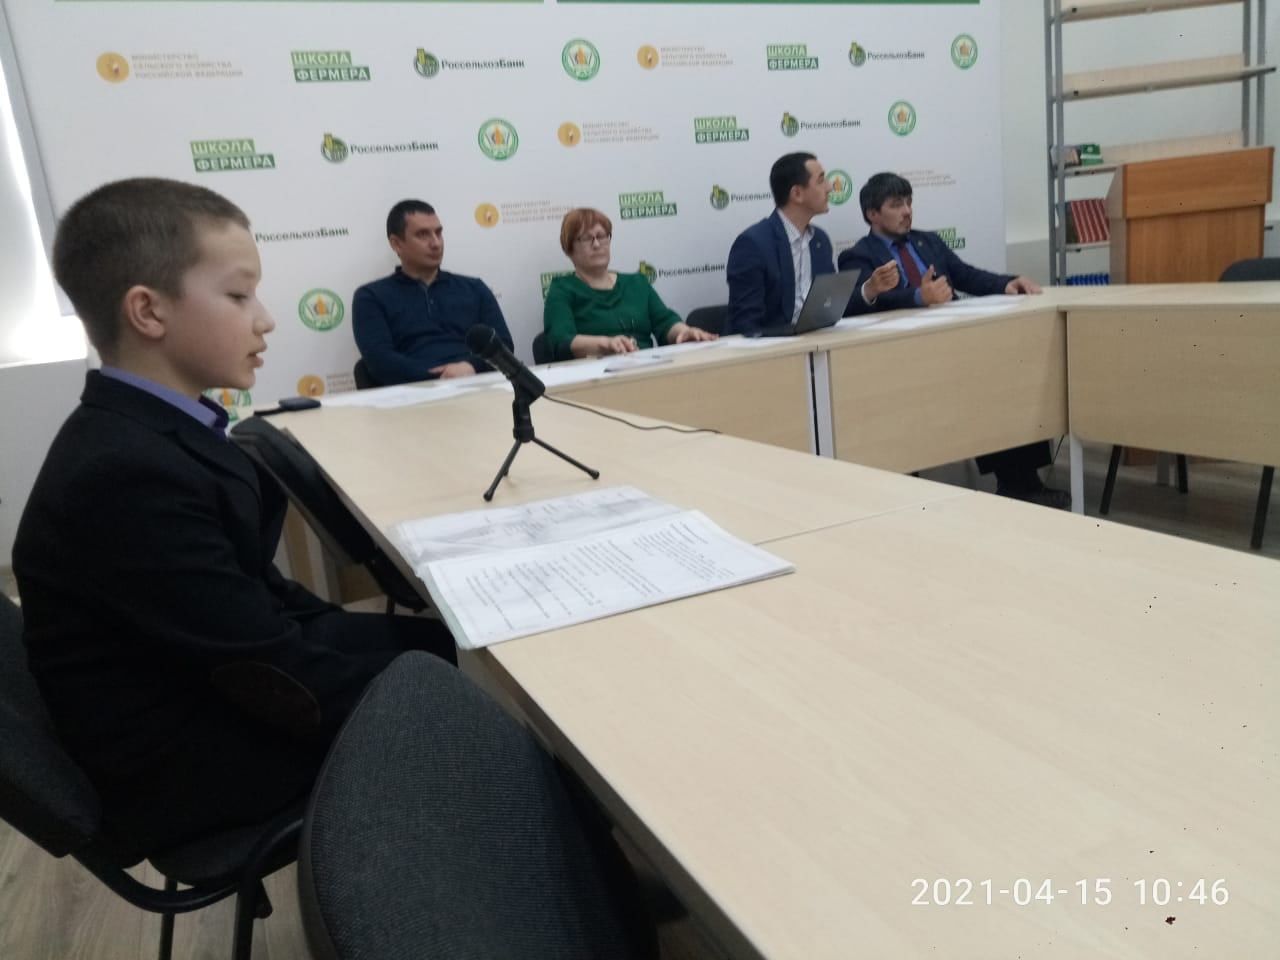 Салихов Амирхан занял 1 место в олимпиаде юных изобретателей